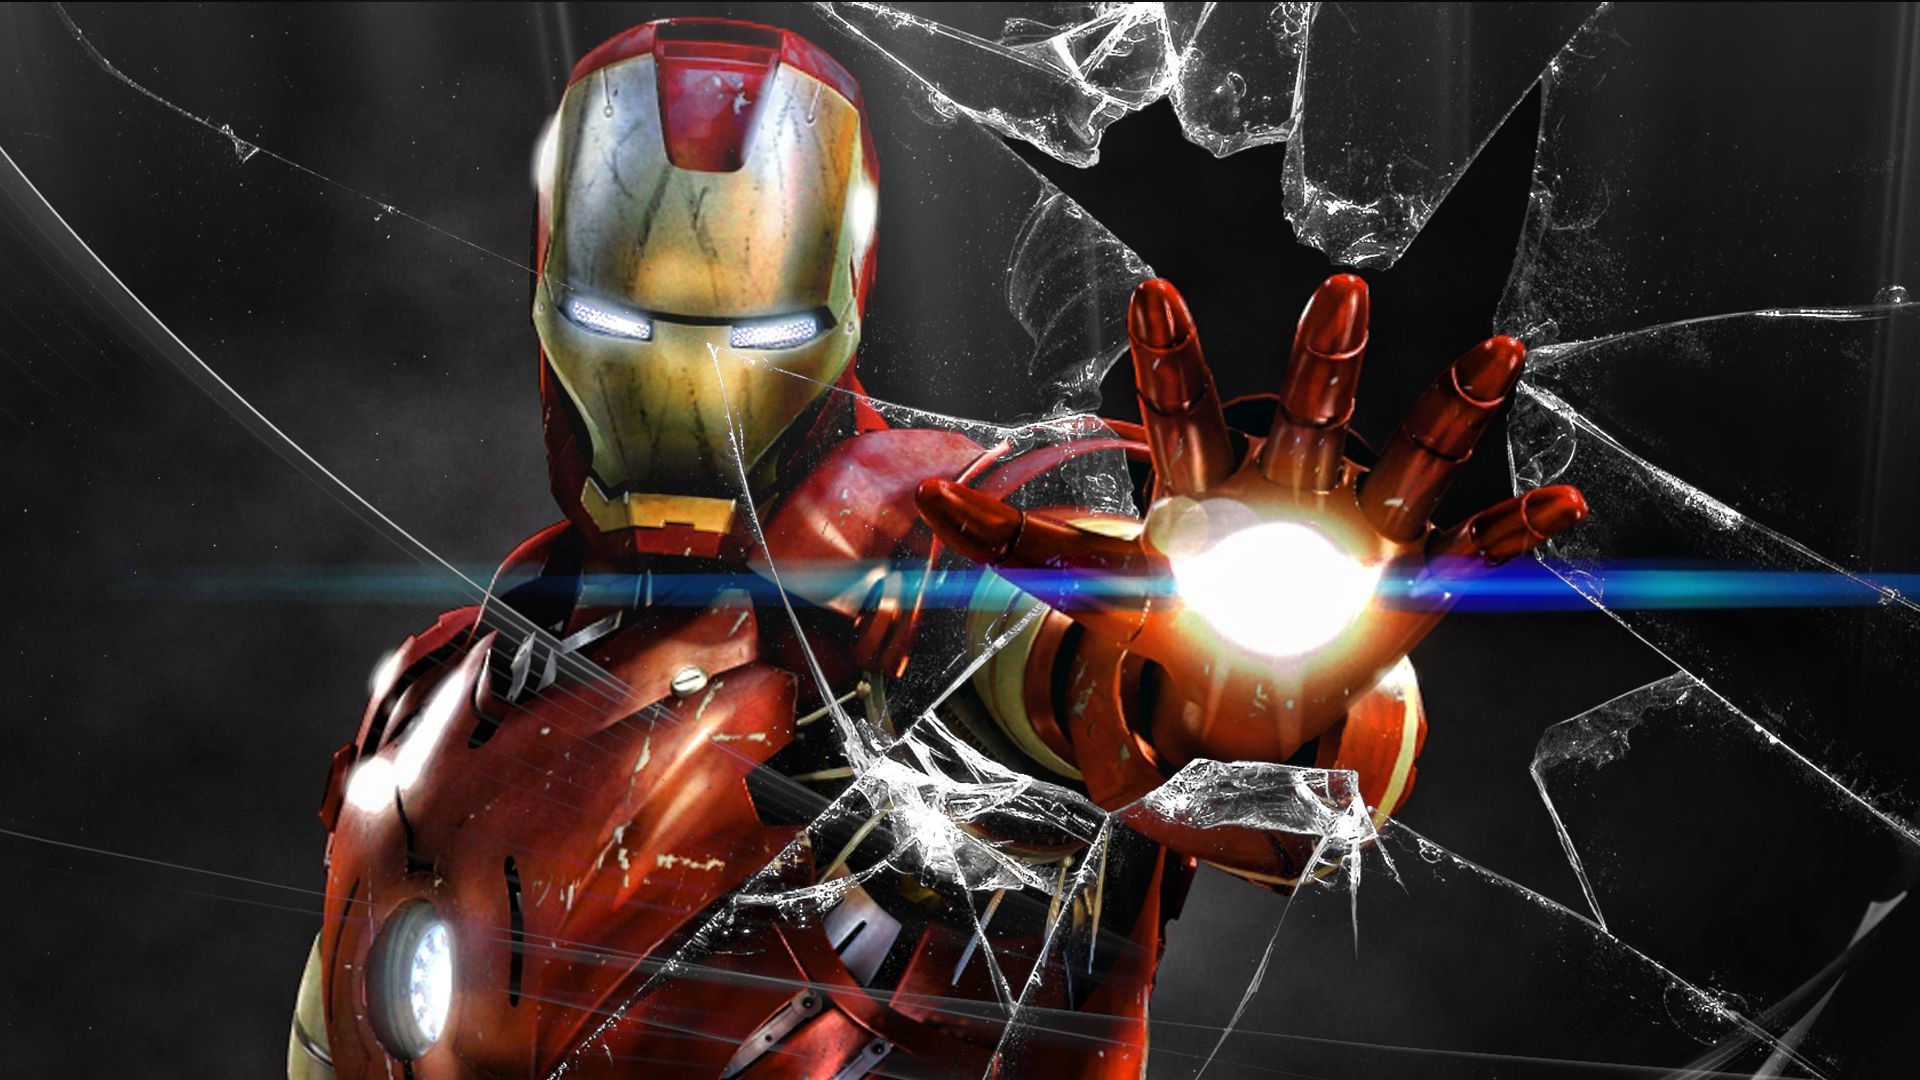 Tải hình nền Iron Man 4k miễn phí và thưởng thức những hình ảnh tuyệt vời nhất của Iron Man trên màn hình của bạn. Chất lượng cao và hoàn toàn miễn phí, làm cho việc tải về trở nên tuyệt vời và đơn giản hơn bao giờ hết. Hãy cùng tải ngay bây giờ!